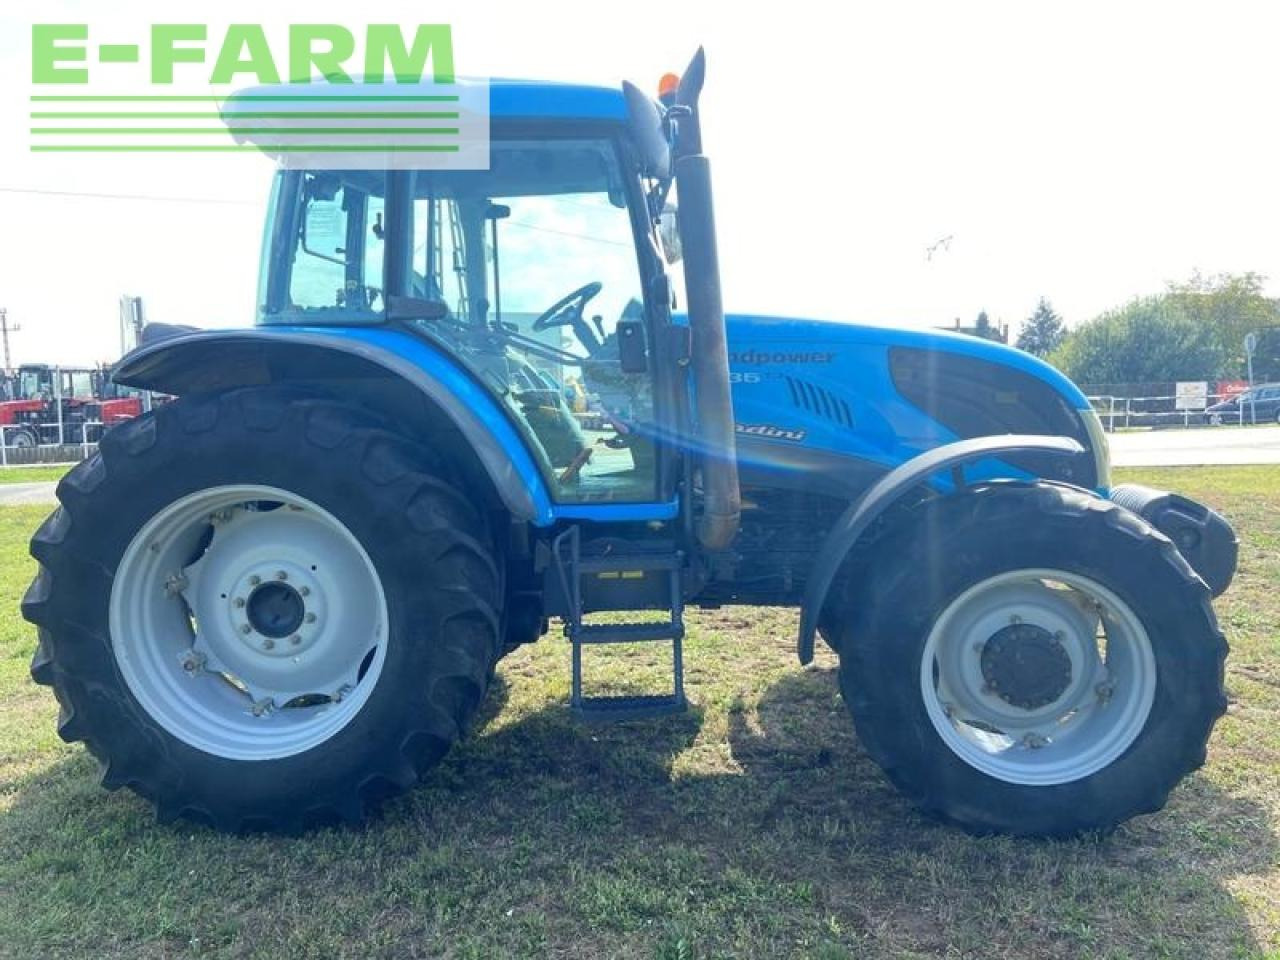 Farm tractor Landini landpower 135: picture 4